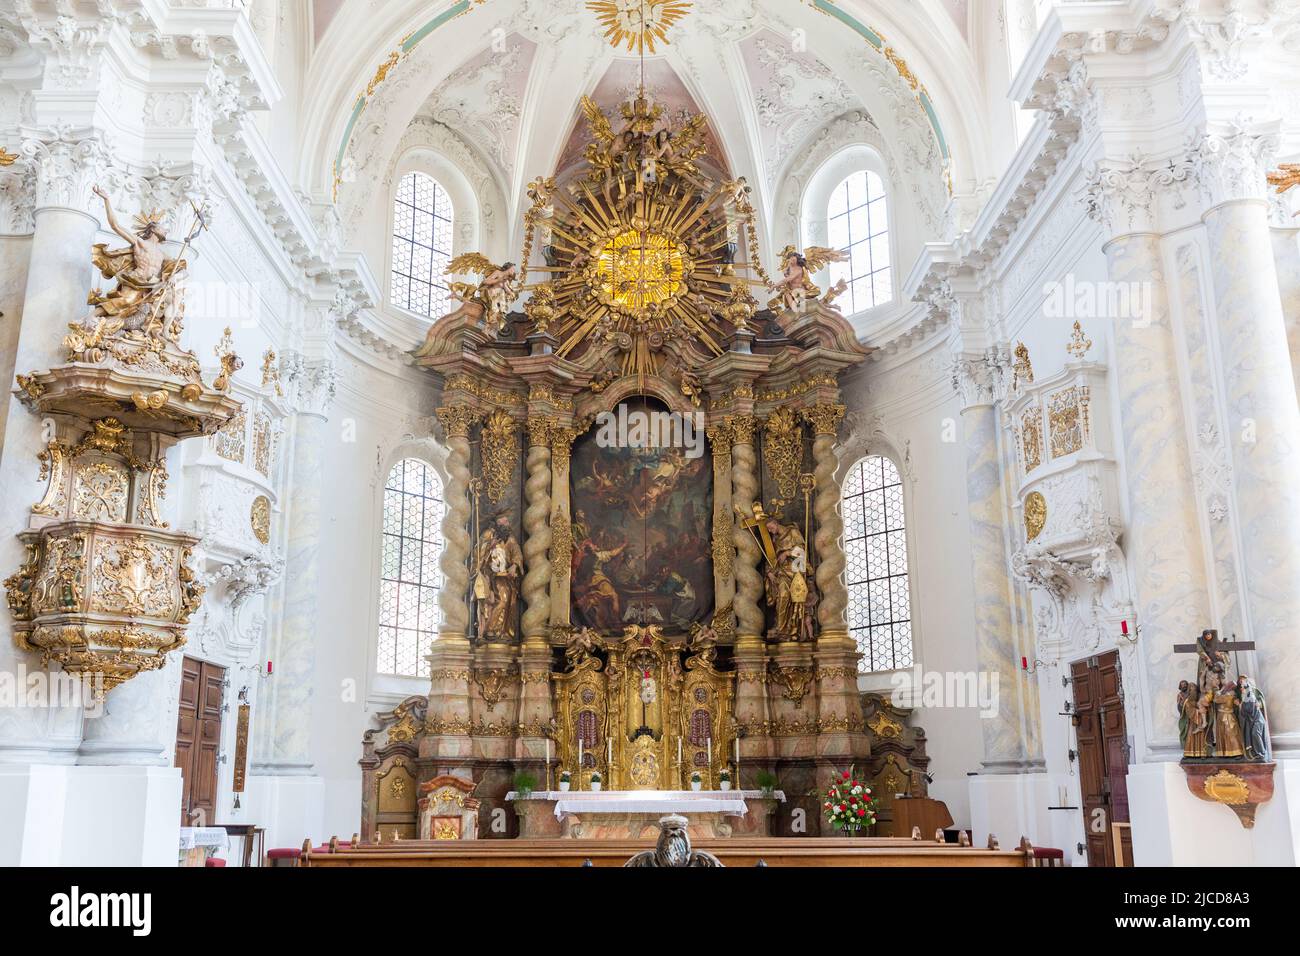 Landshut, Germania - ago 15, 2021: Vista sull'altare della Abteikirche (chiesa abbaziale) Seligenthal. Architettura in stile rococò. Foto Stock